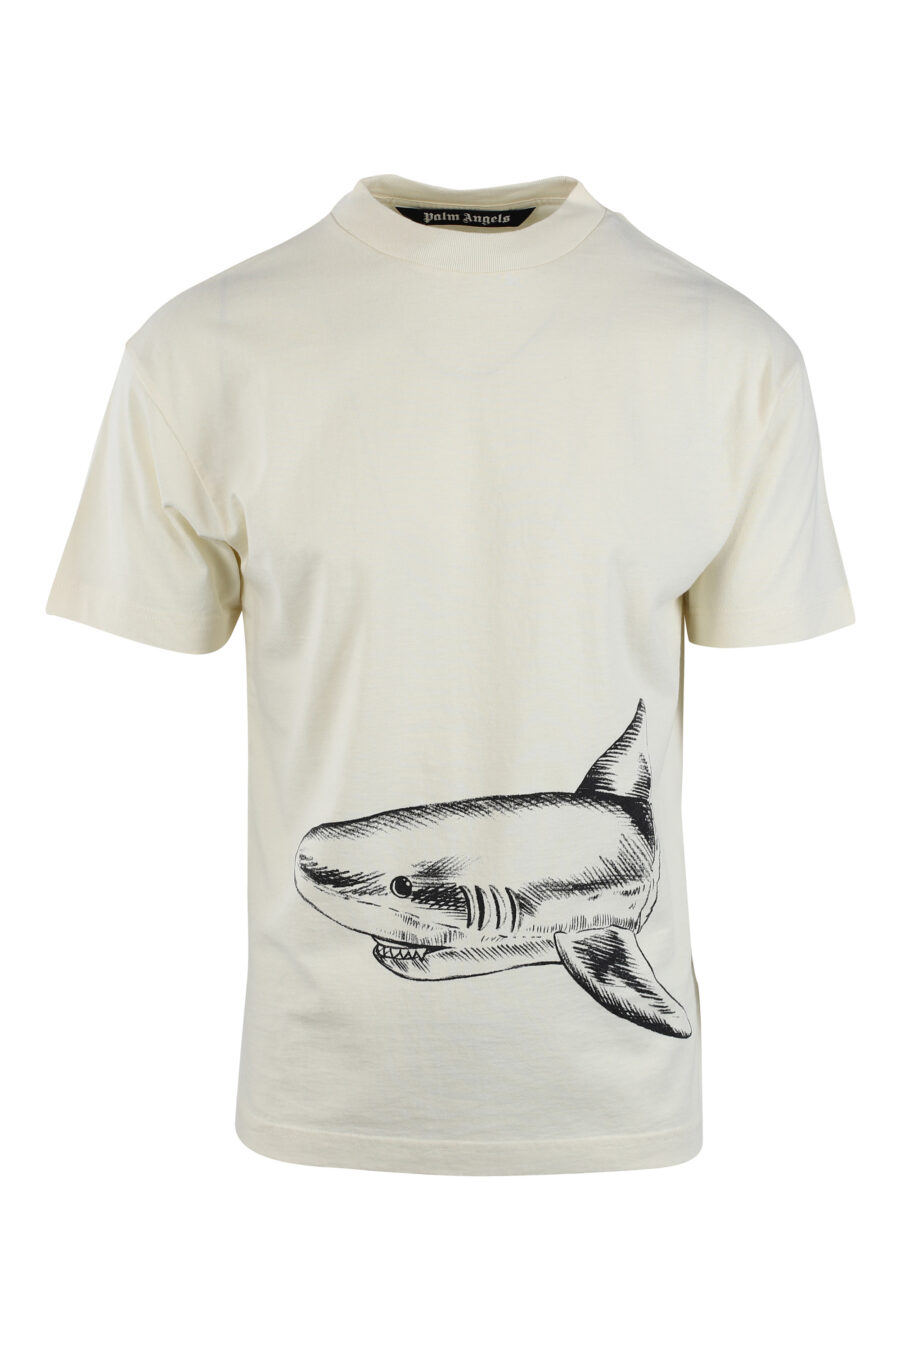 Camiseta beige con estampado tiburón - IMG 2598